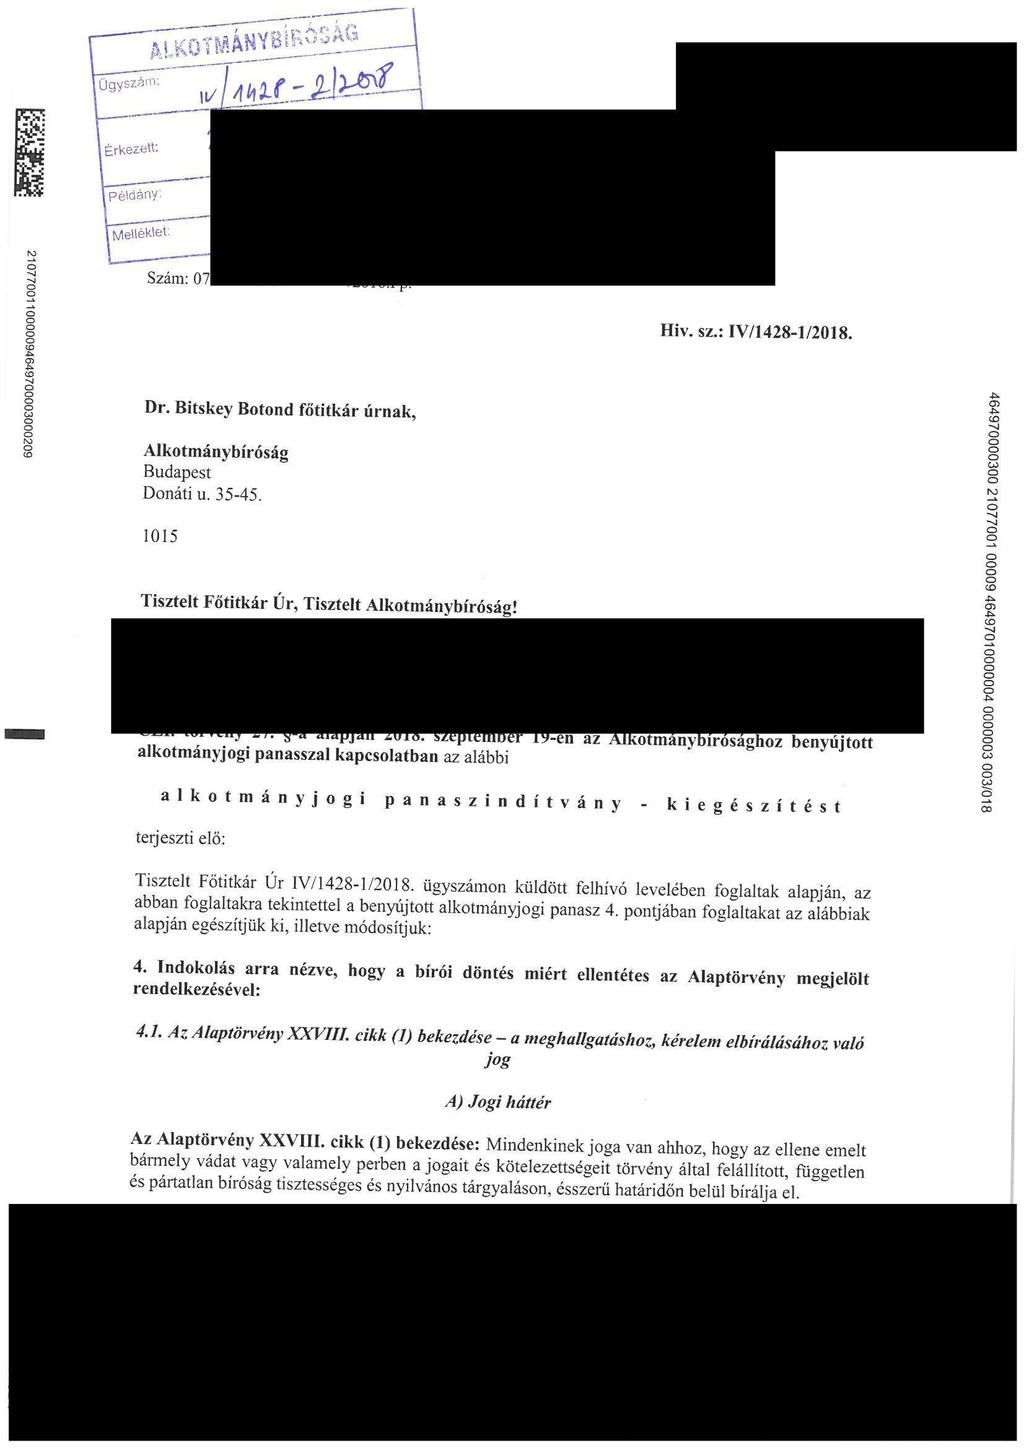 _... M^. ^^- Hiv. sz. :IV/1428-l/2018. Dr. Bitskey Botond főtitkár úrnak, Alkotmánybfróság Budapest Donáti u. 35-45. 1015 Tisztelt Főtitkár Ür, Tisztelt Alkotmánybíroság! co -pl. s 1. -a alapján 2018.